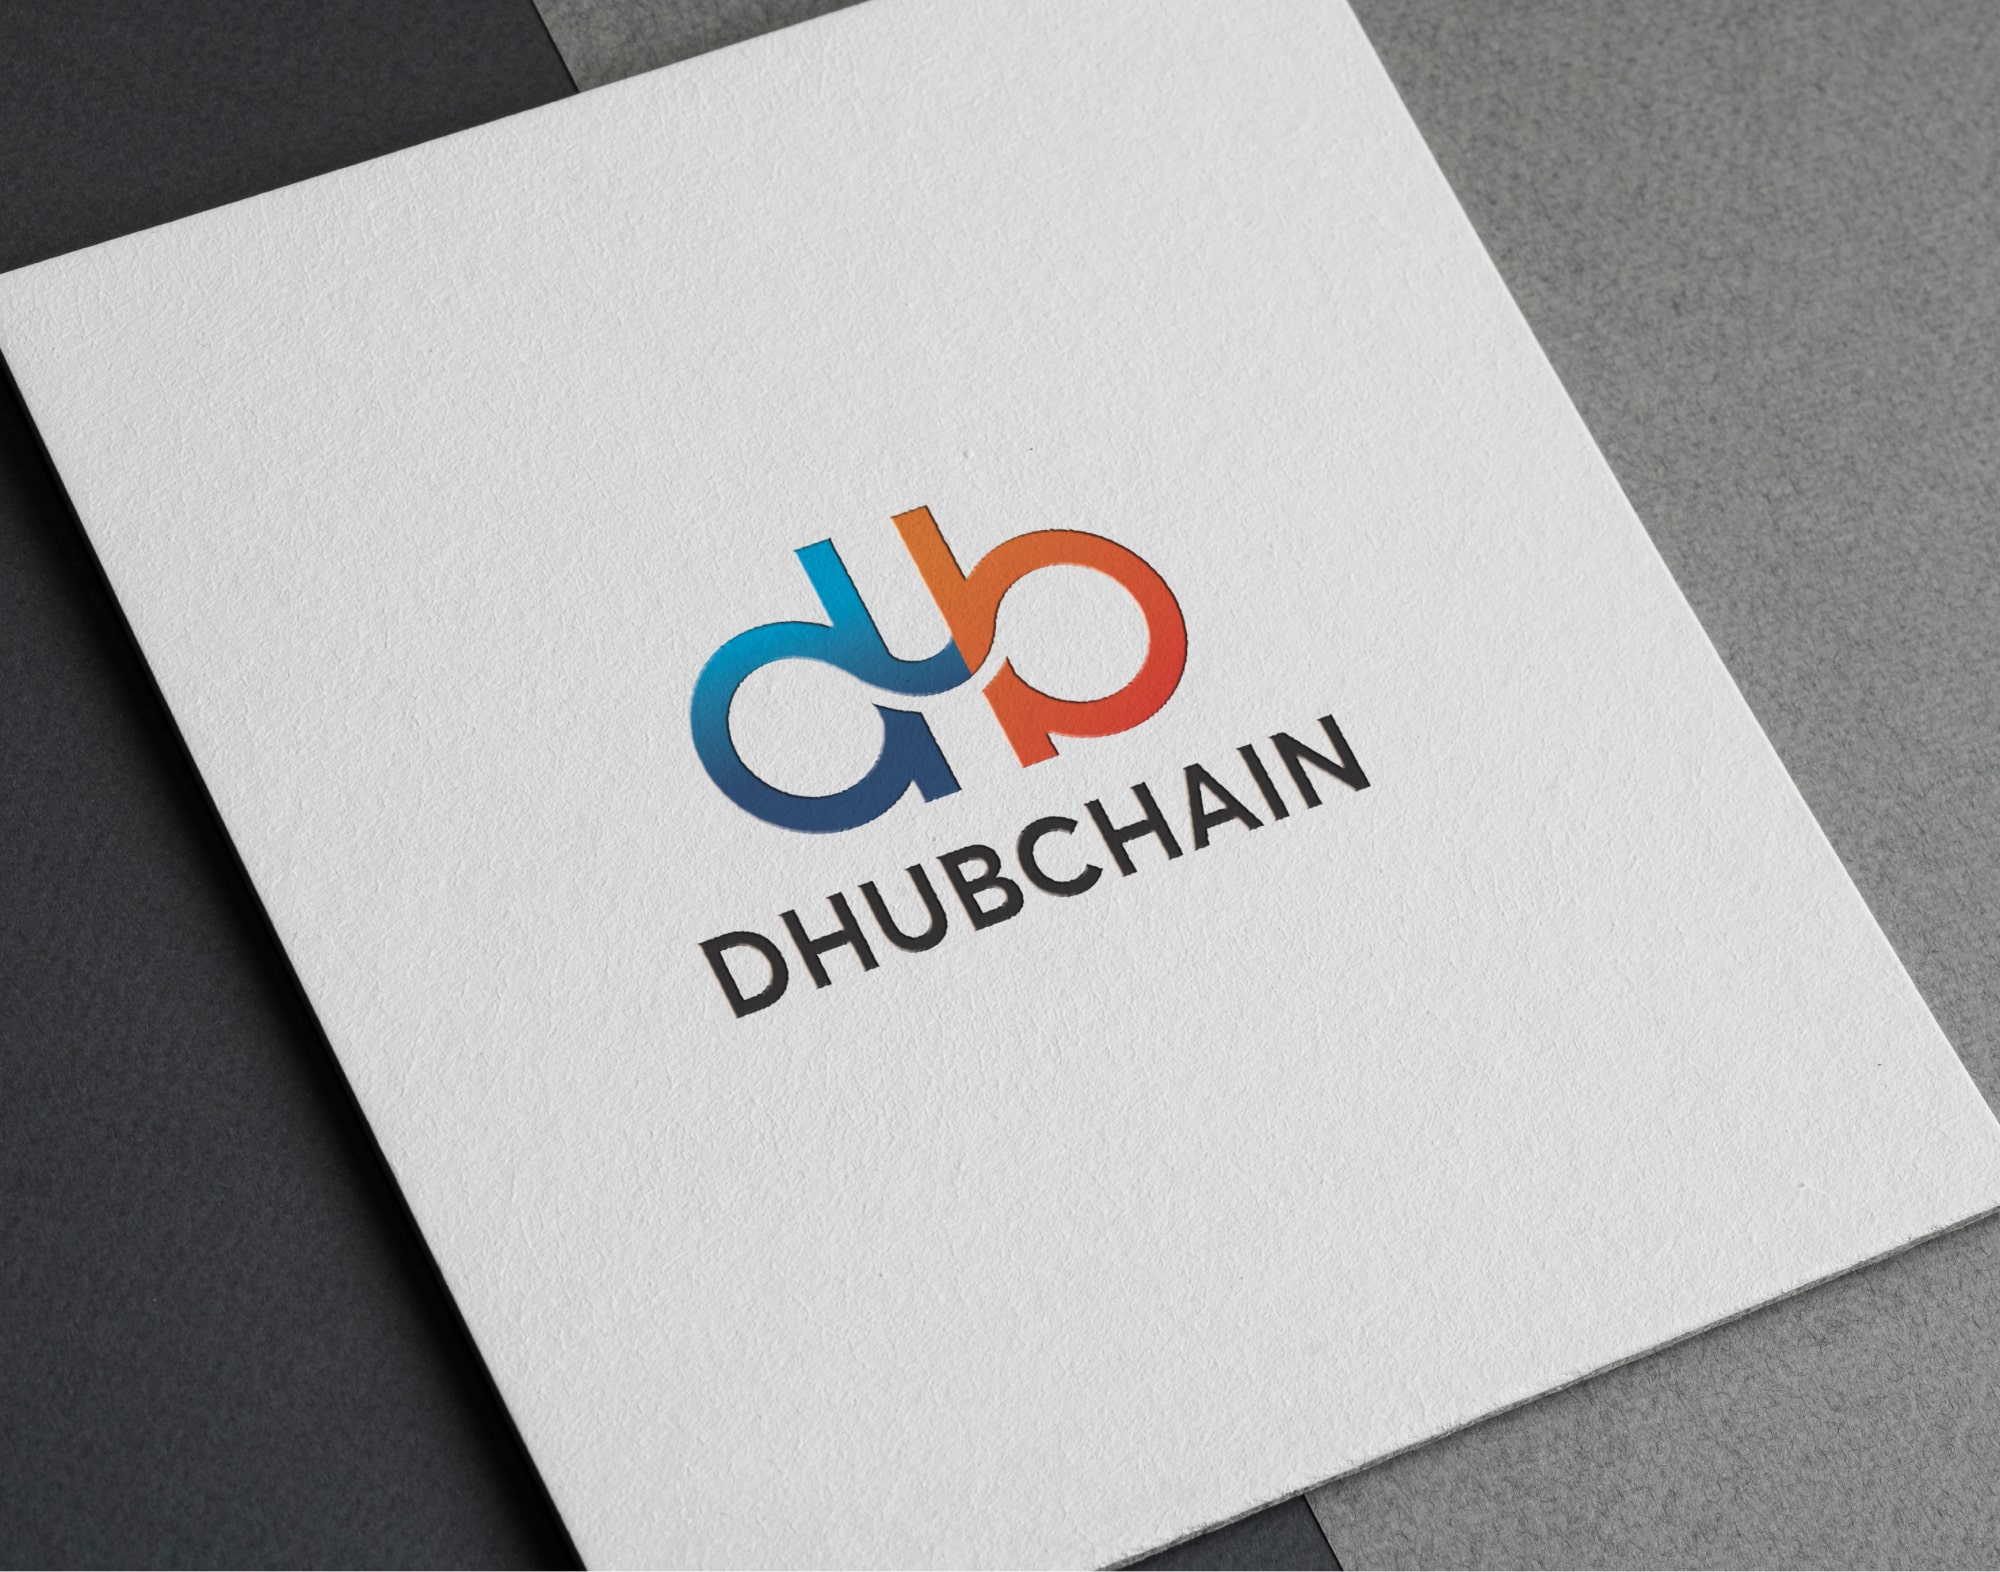 Dhub Chain